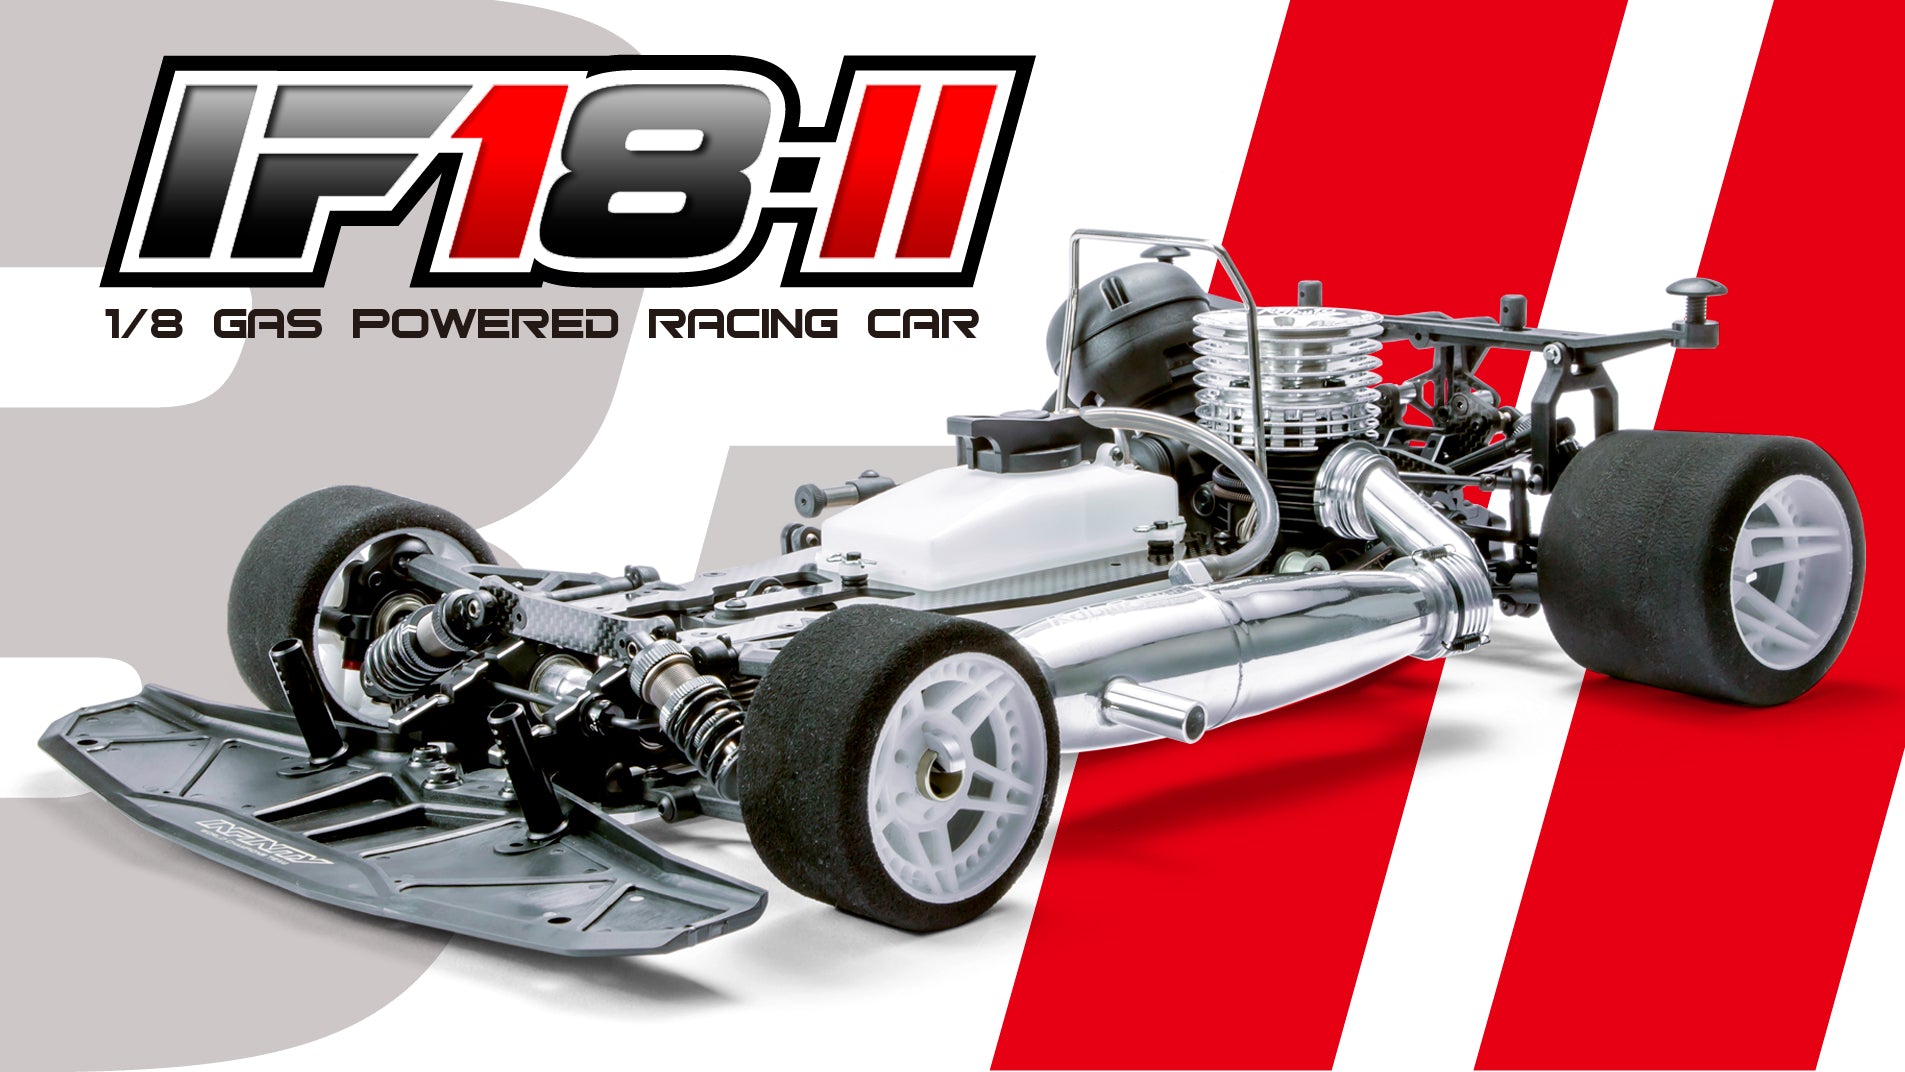 IF18-II 1/8 GP RACING CHASSIS KIT – Inf1nity RC Cars